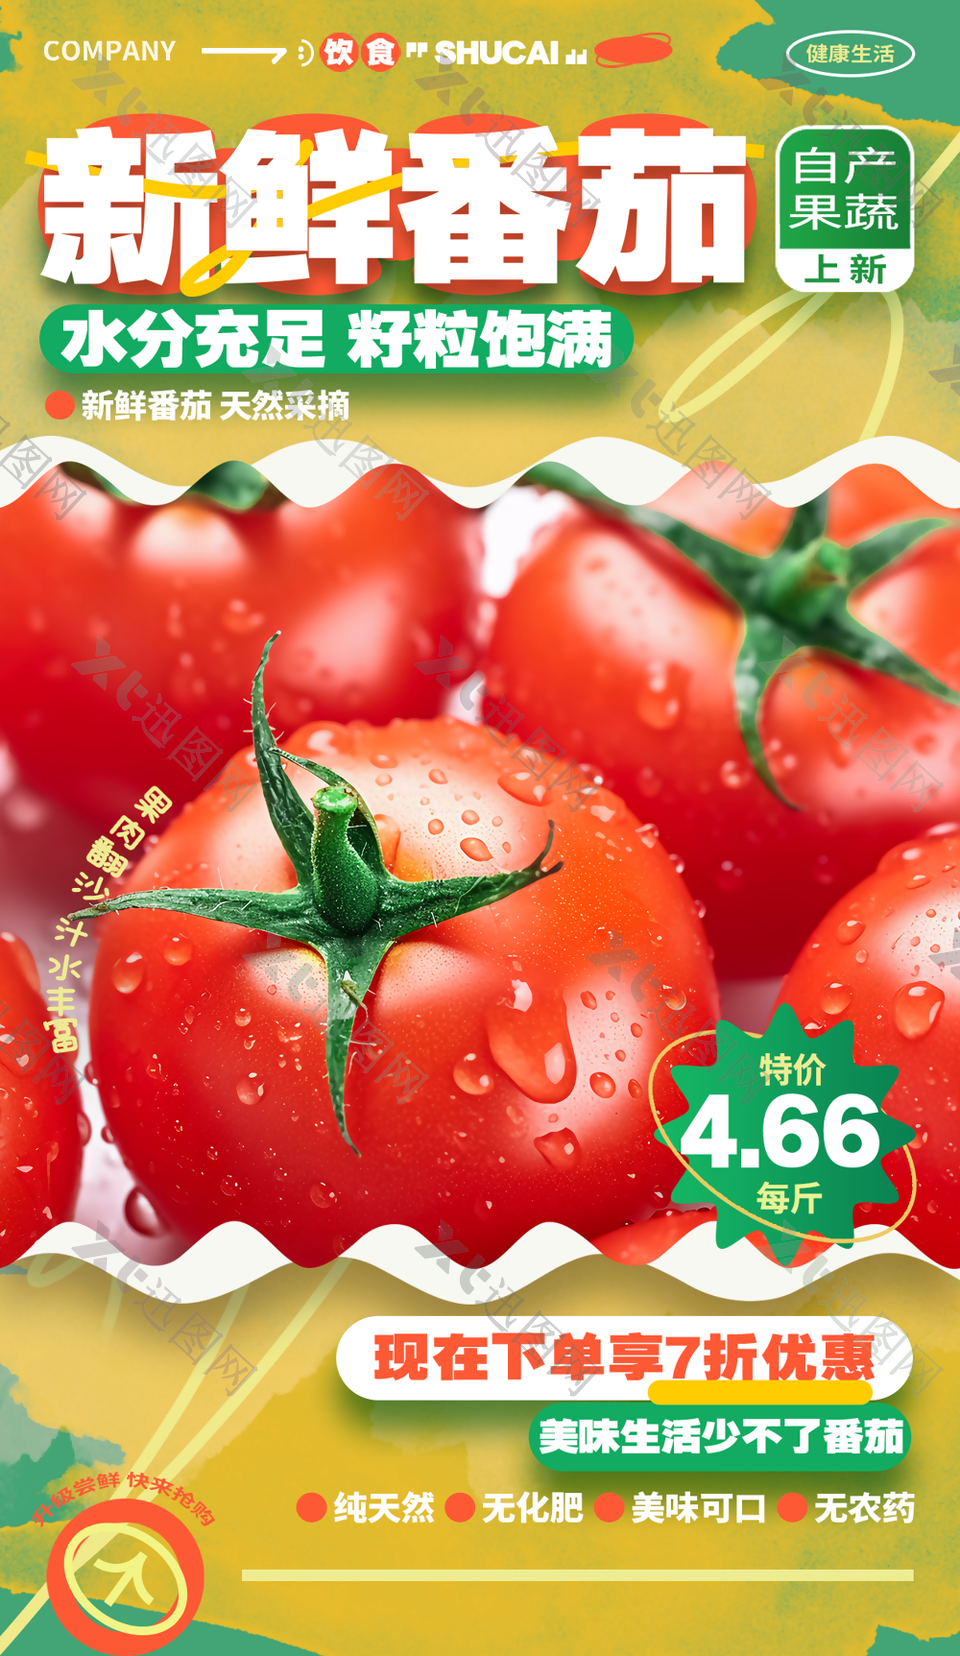 纯天然美味可口水分充足新鲜番茄海报设计